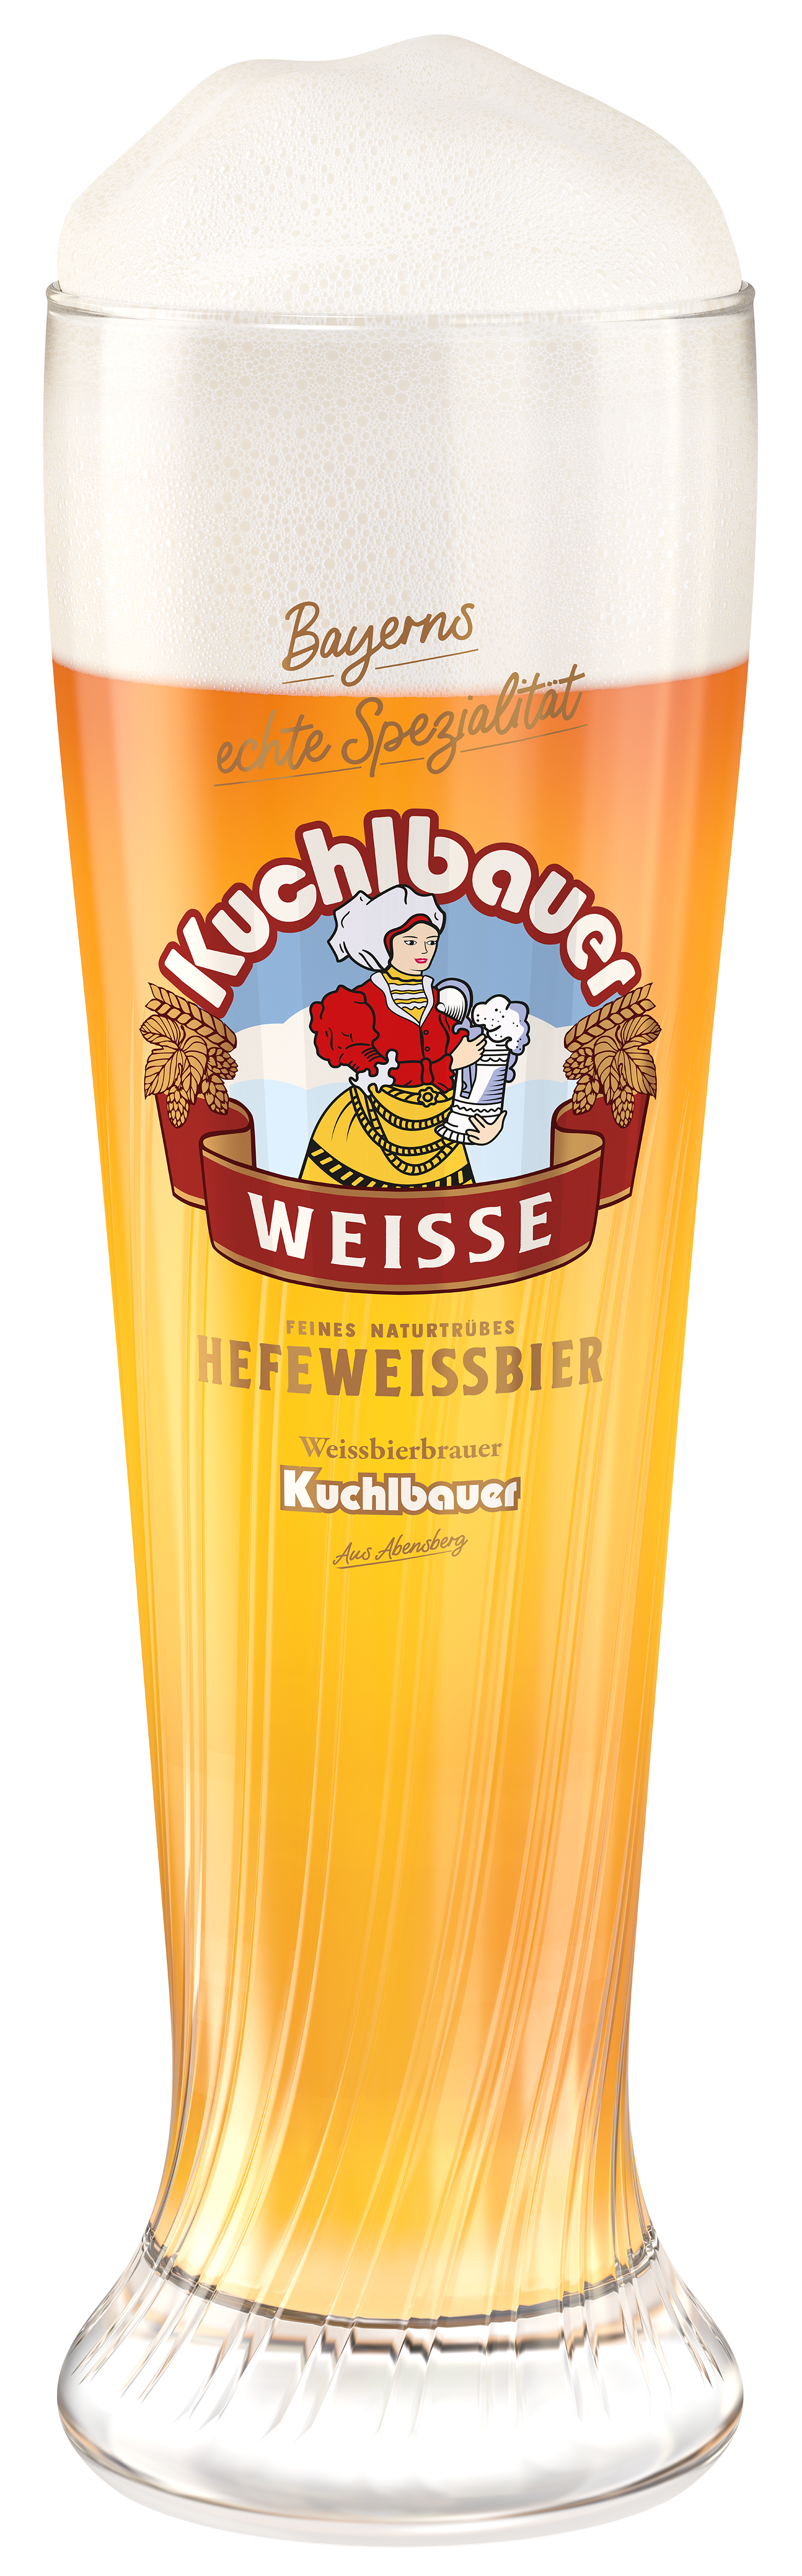 Bier-Rendering Hefeweissbier